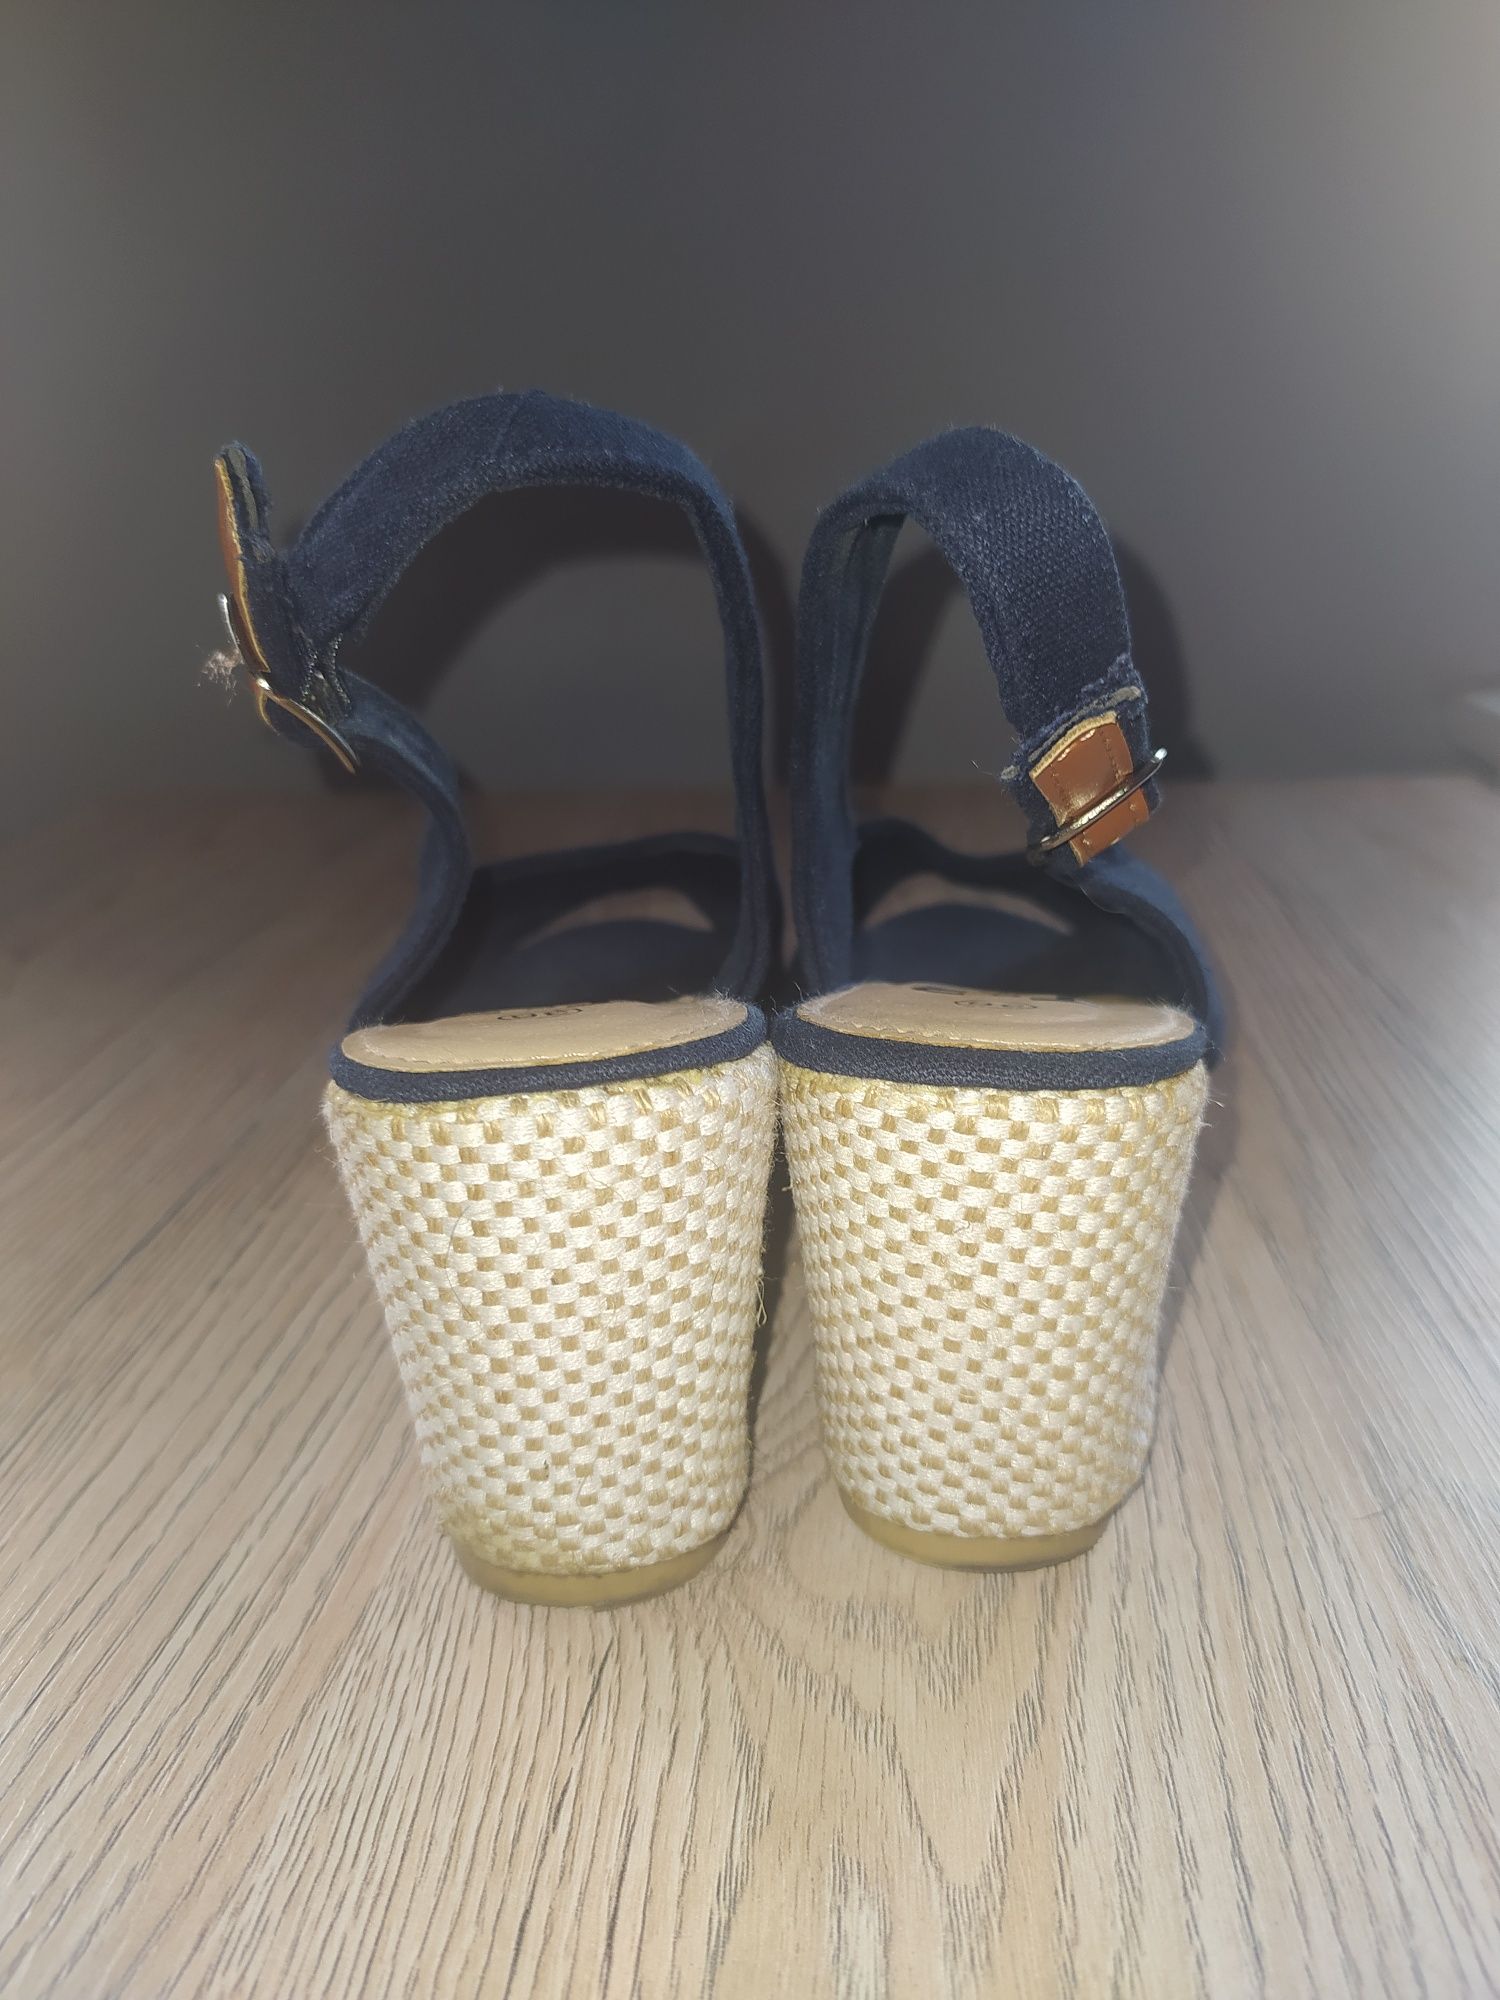 Granatowe szmaciane sandałki na koturnie rozmiar 36